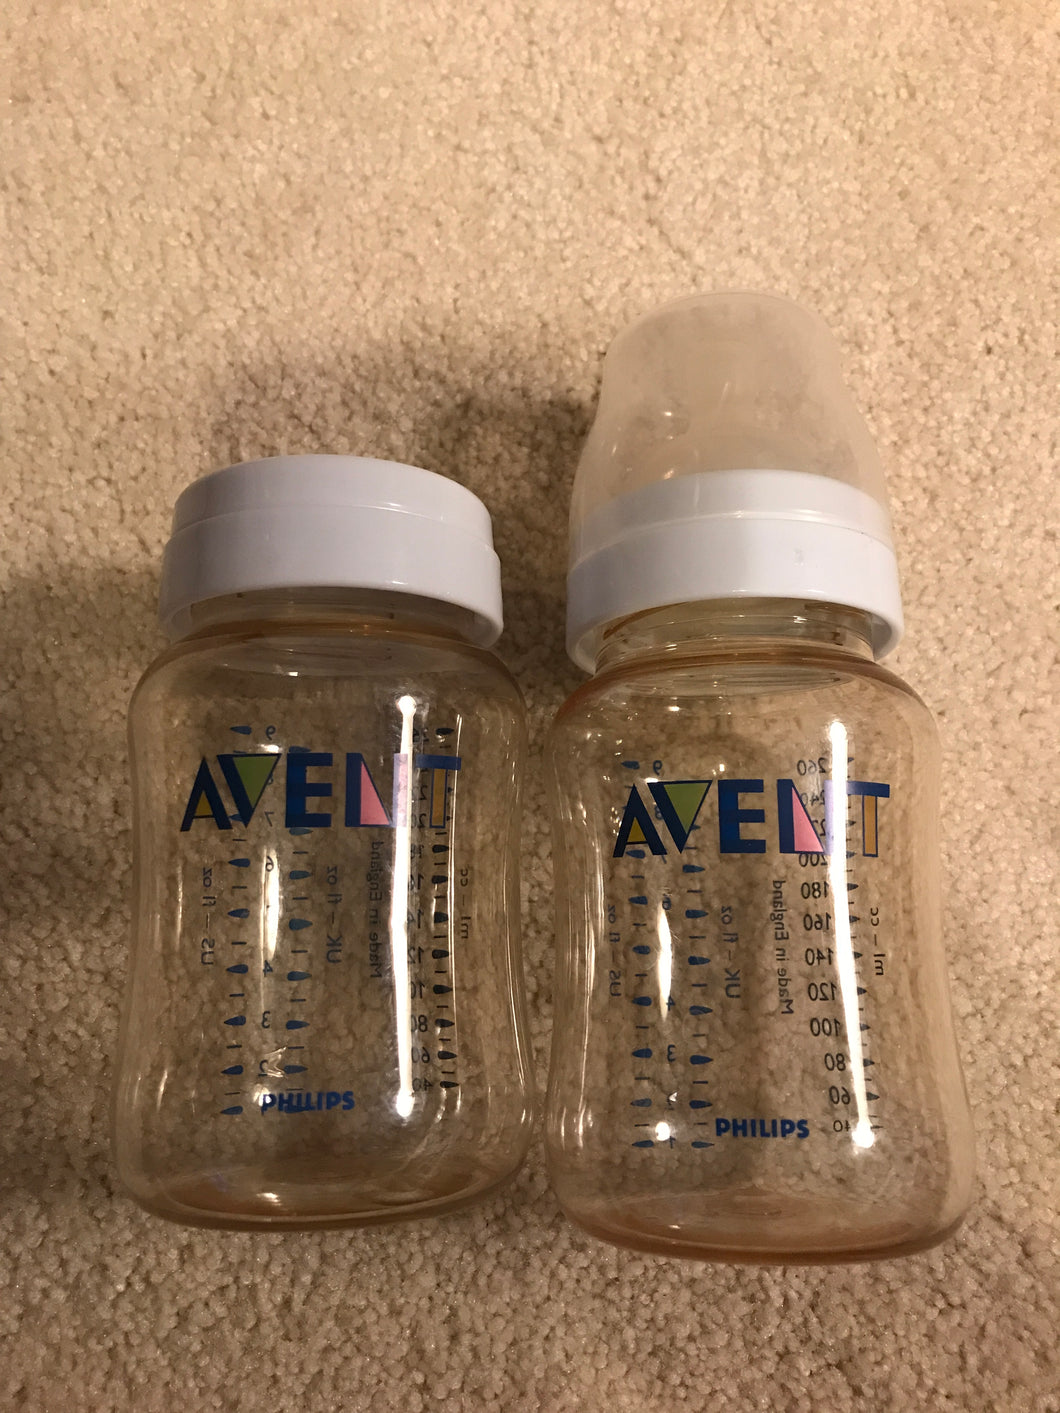 Avent bottles 9oz